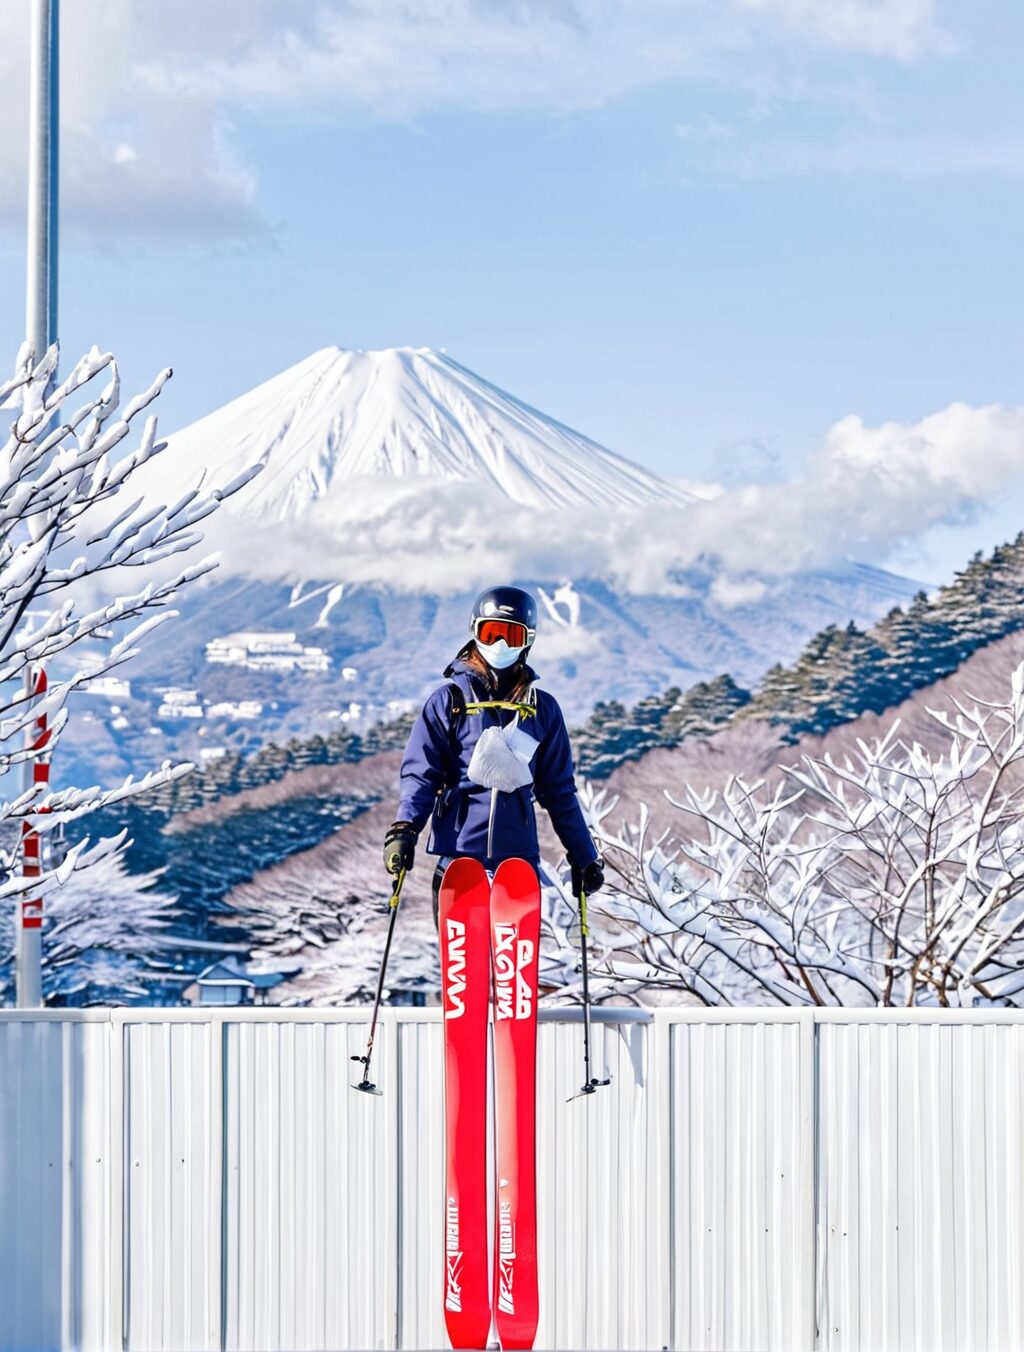 when is peak ski season in japan